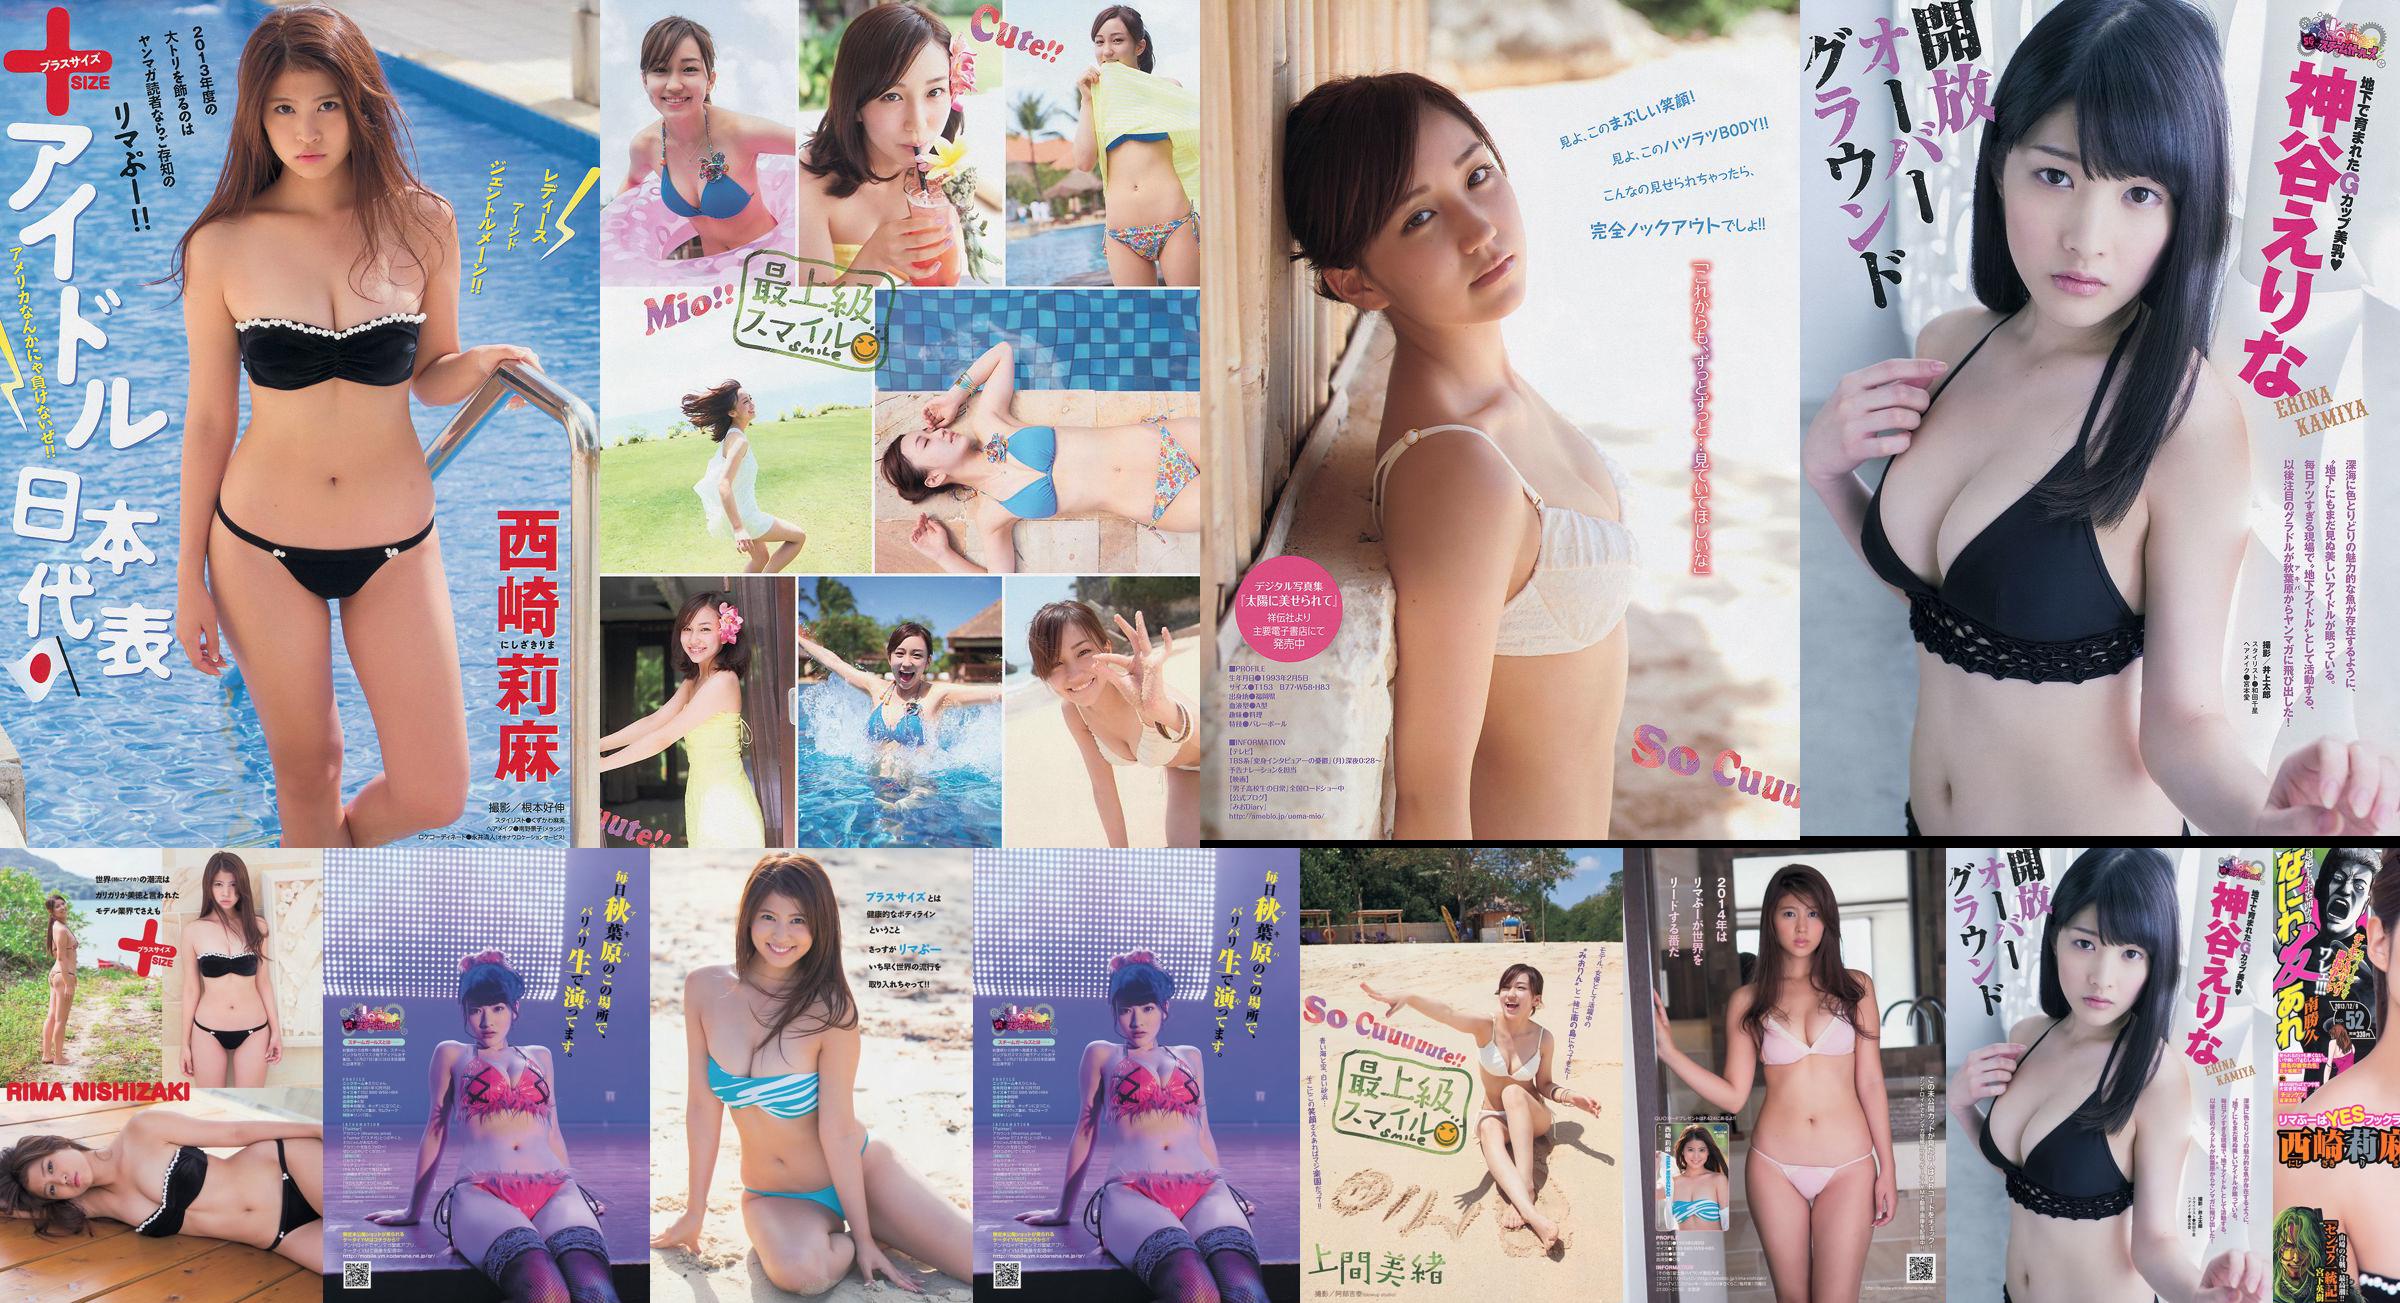 [Young Magazine] Rima Nishizaki Mio Uema Erina Kamiya 2013 No.52 Photo Moshi No.0dc034 Pagina 1